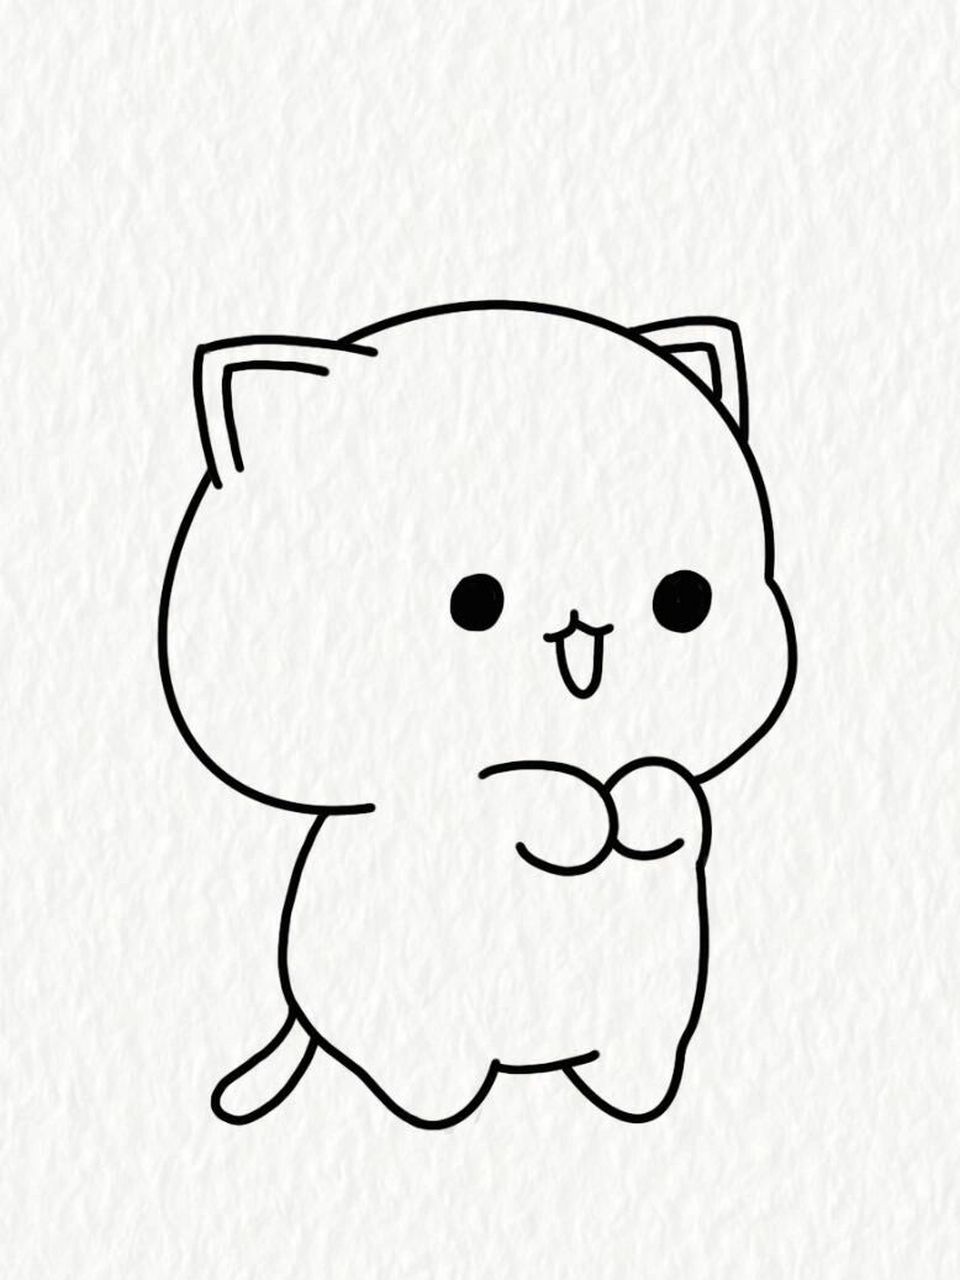 简笔画教程—卖萌撒娇的小猫咪 这么可爱的简笔画,快去画它!